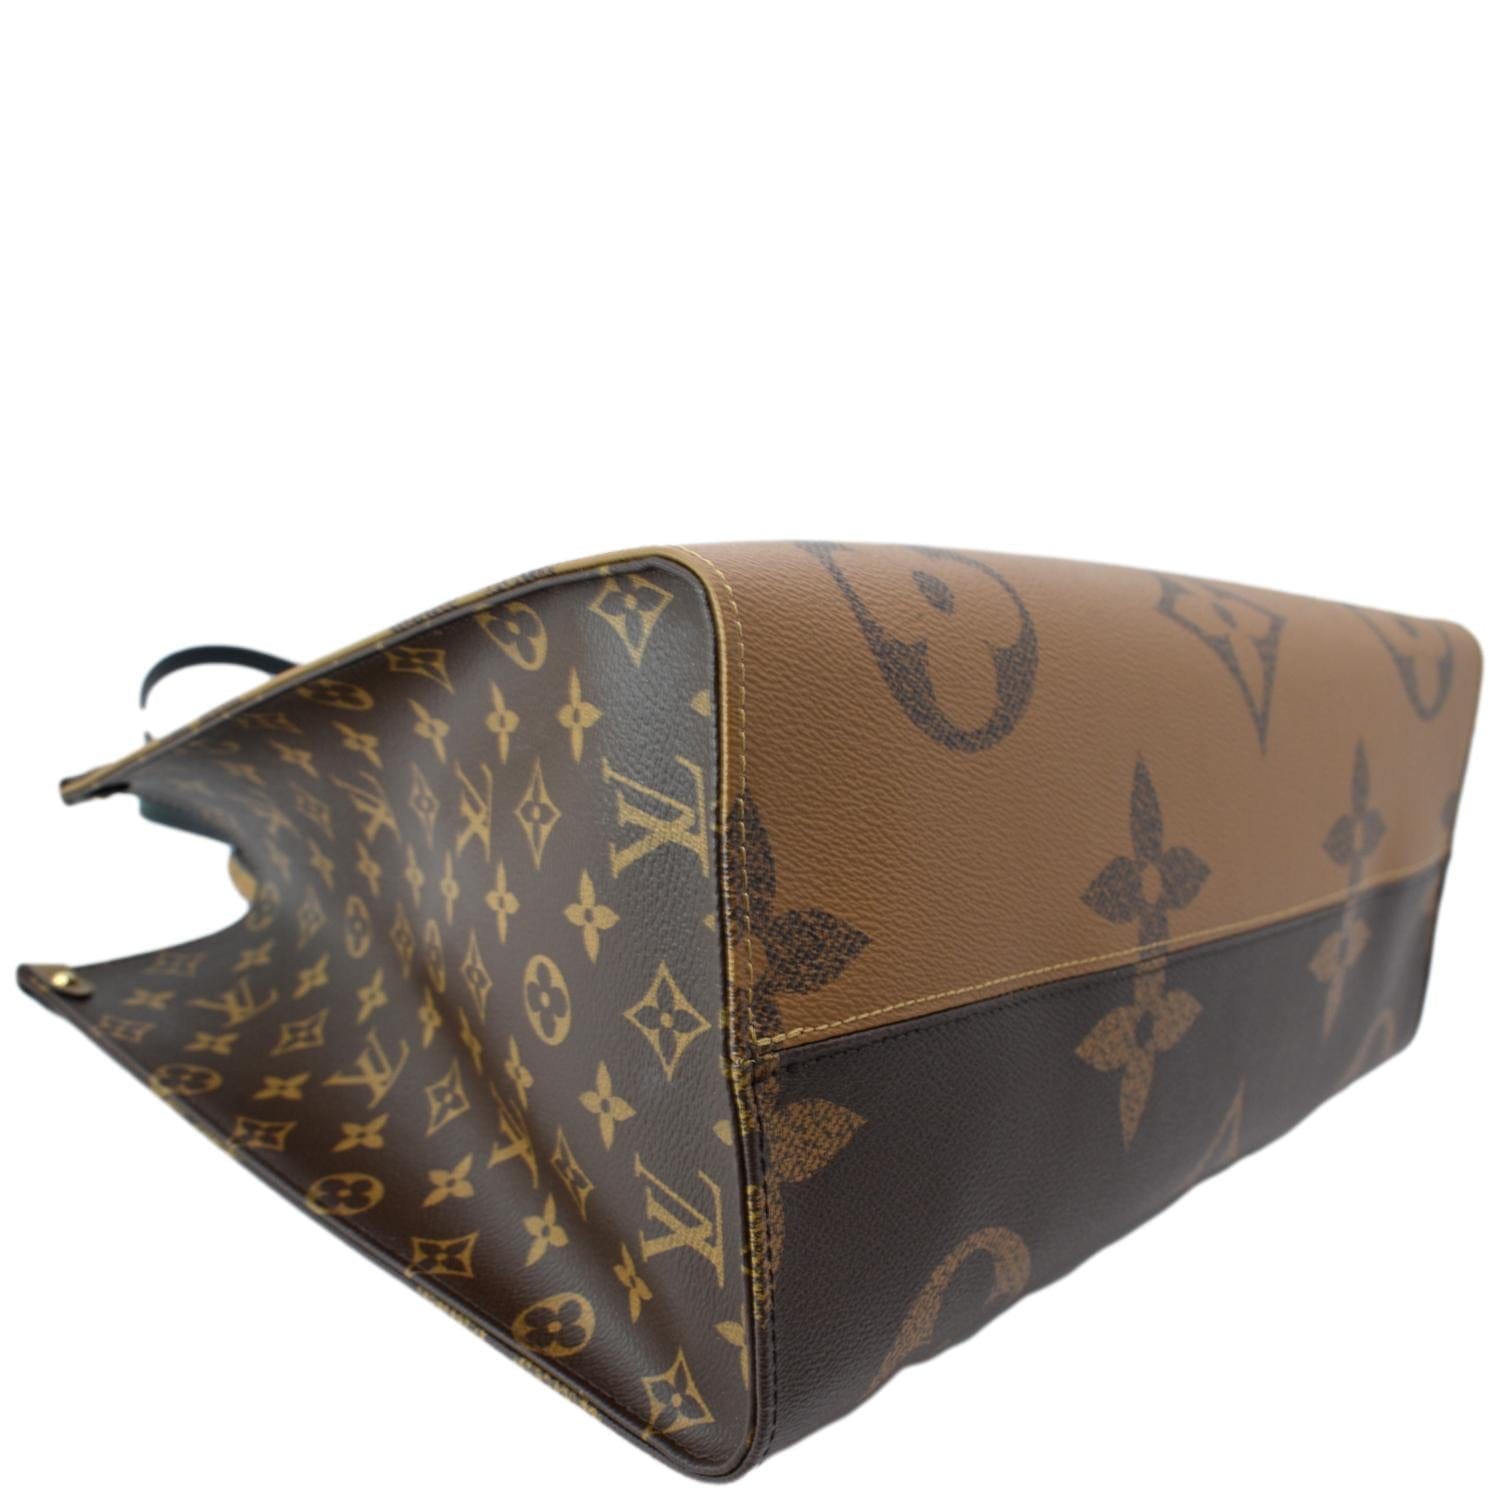 Louis Vuitton Canvas Tote Bag - 286 For Sale on 1stDibs  lv canvas bags, louis  vuitton canvas bags, louis vuitton canvas shoulder bag